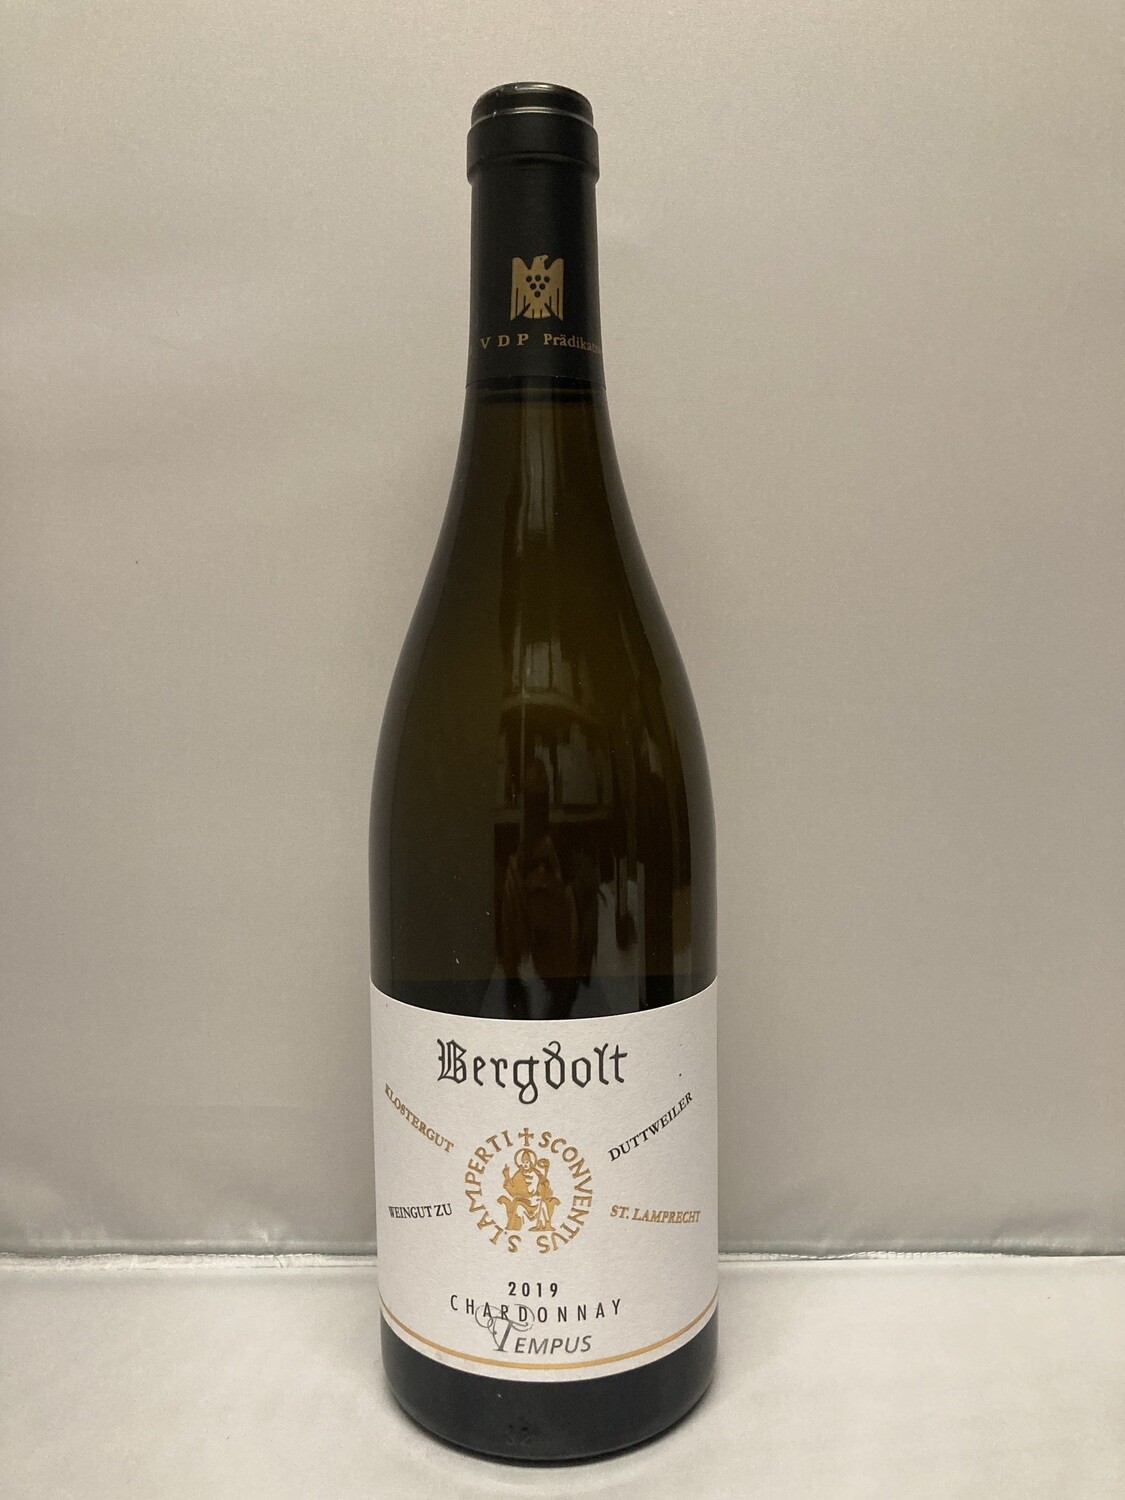 Chardonnay-2020 droog Tempus Bergdolt (Pfalz)